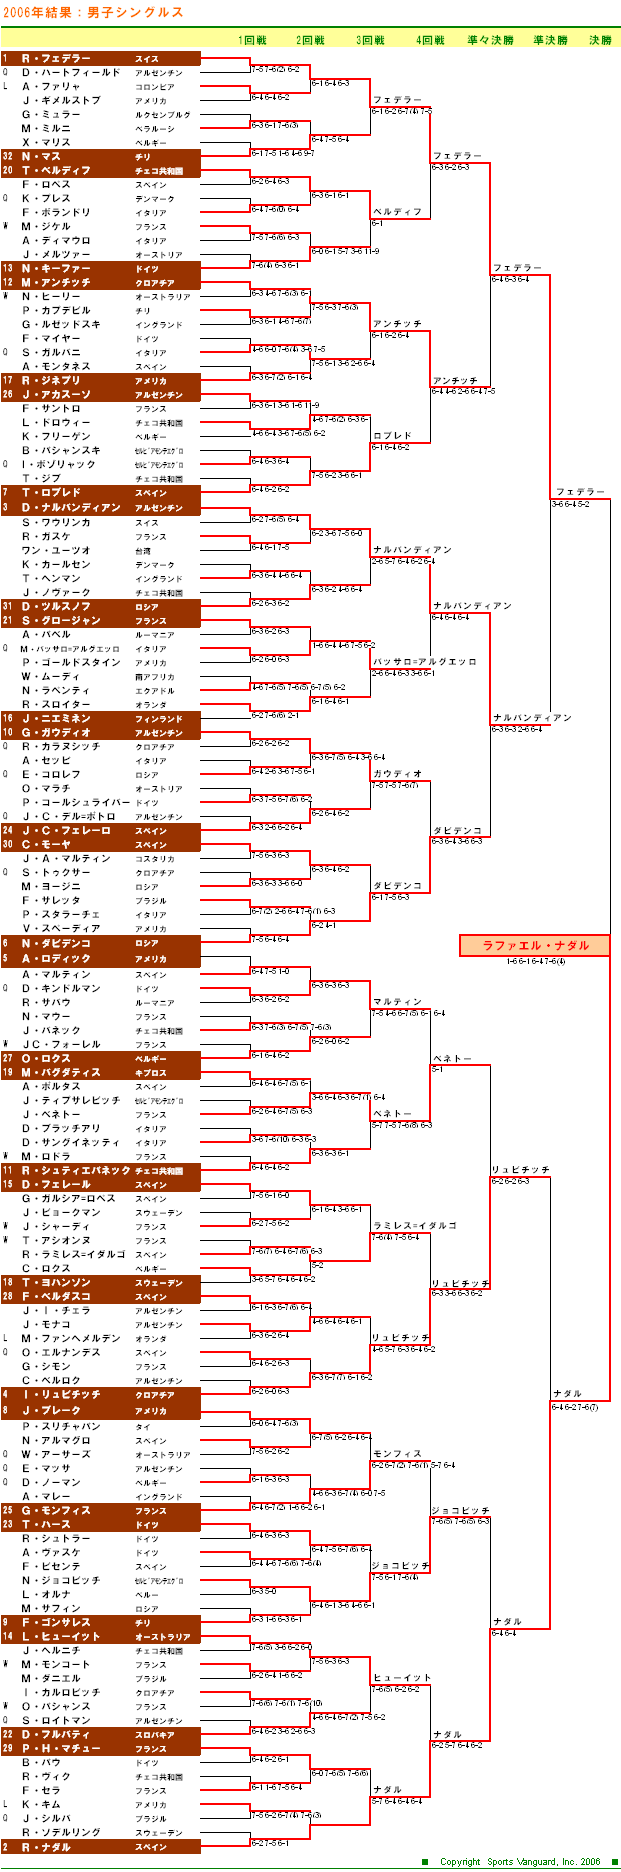 全仏オープンテニス2006　男子シングルスドロー表